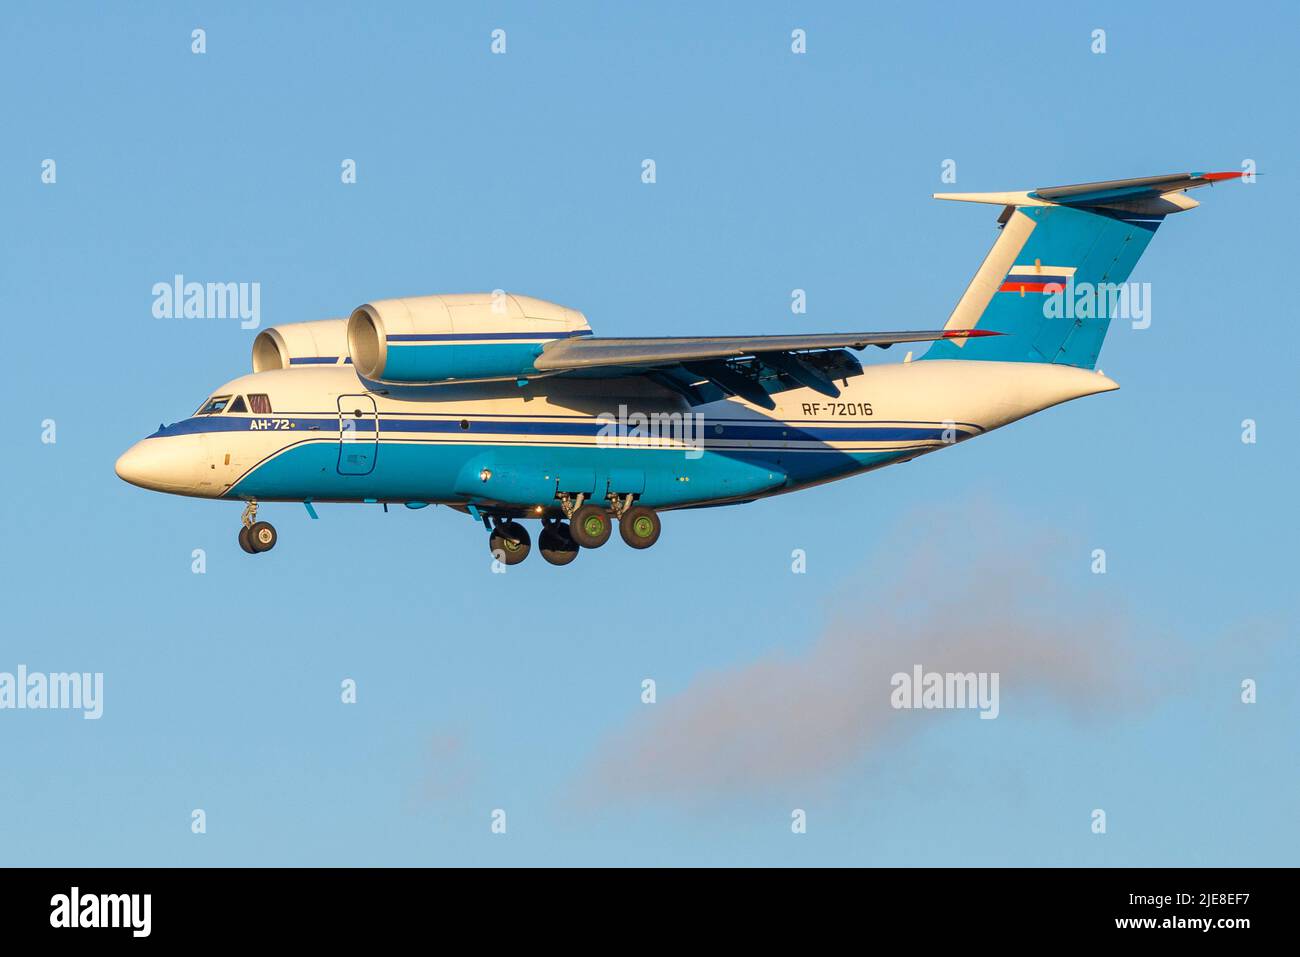 SANKT PETERSBURG, RUSSLAND - 25. OKTOBER 2018: Flugzeug an-72 (RF-72016) des föderalen Grenzdienstes Russlands im Flug Stockfoto